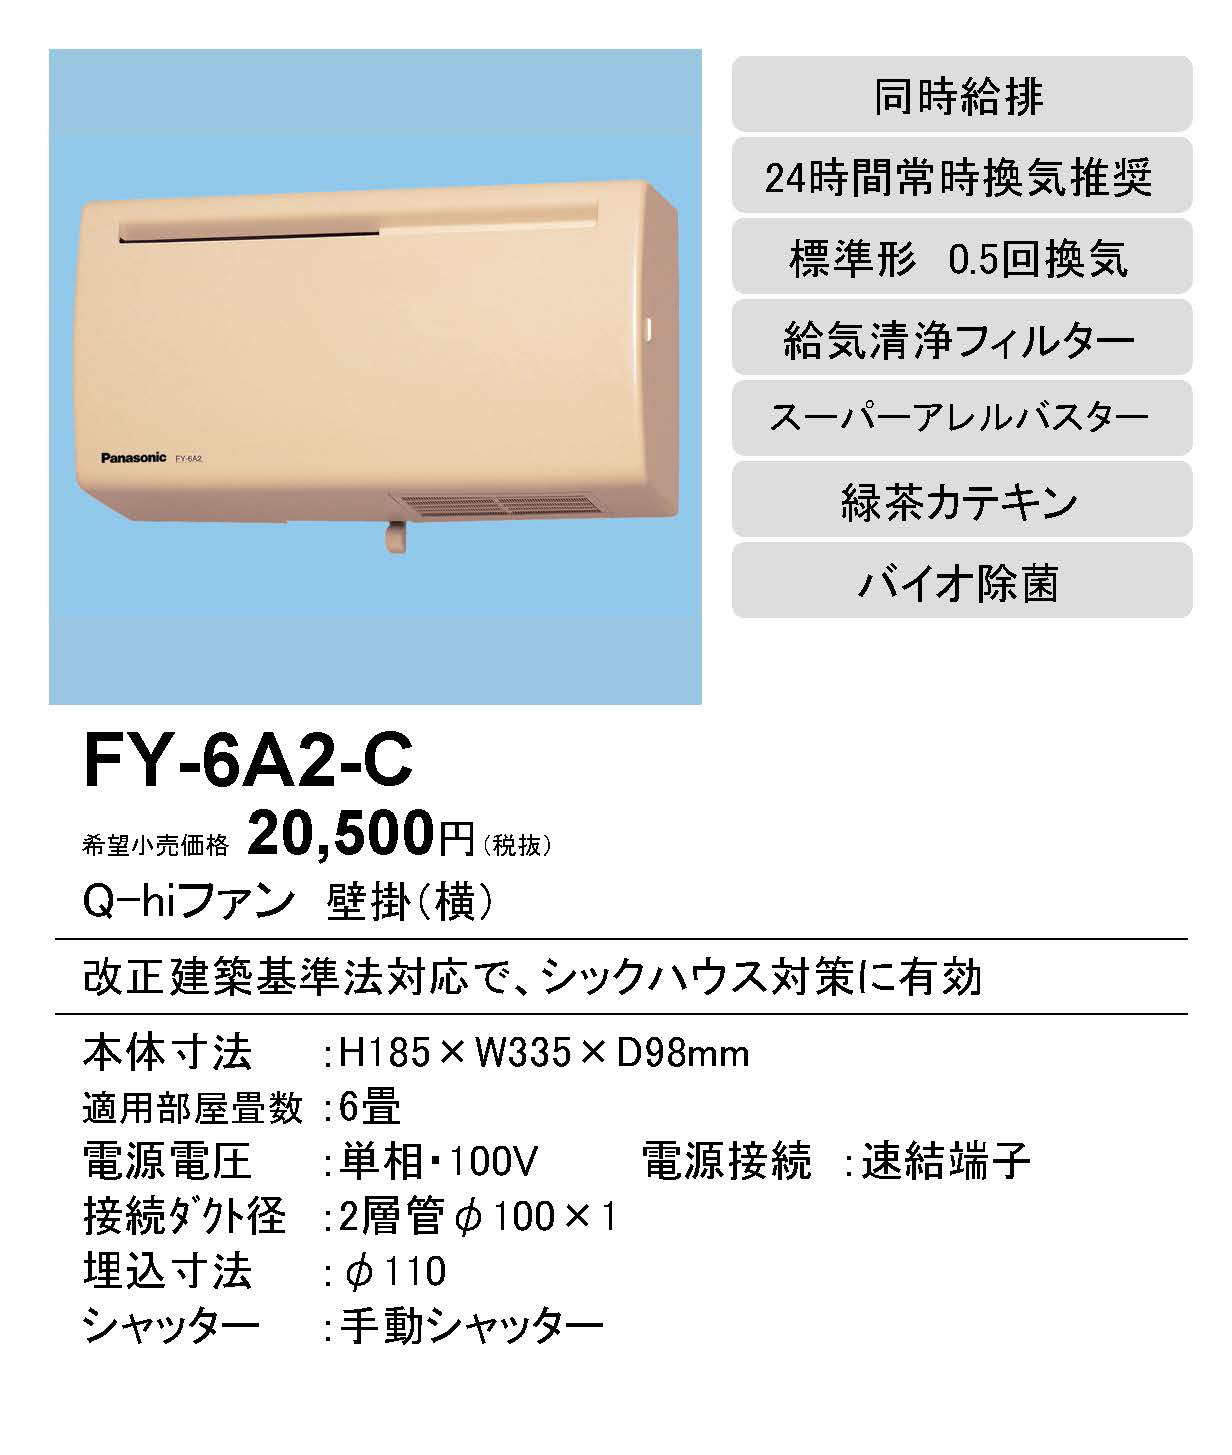 FY-6A2-C | 換気扇 | パナソニック Panasonic Q-hiファン壁掛形・1 